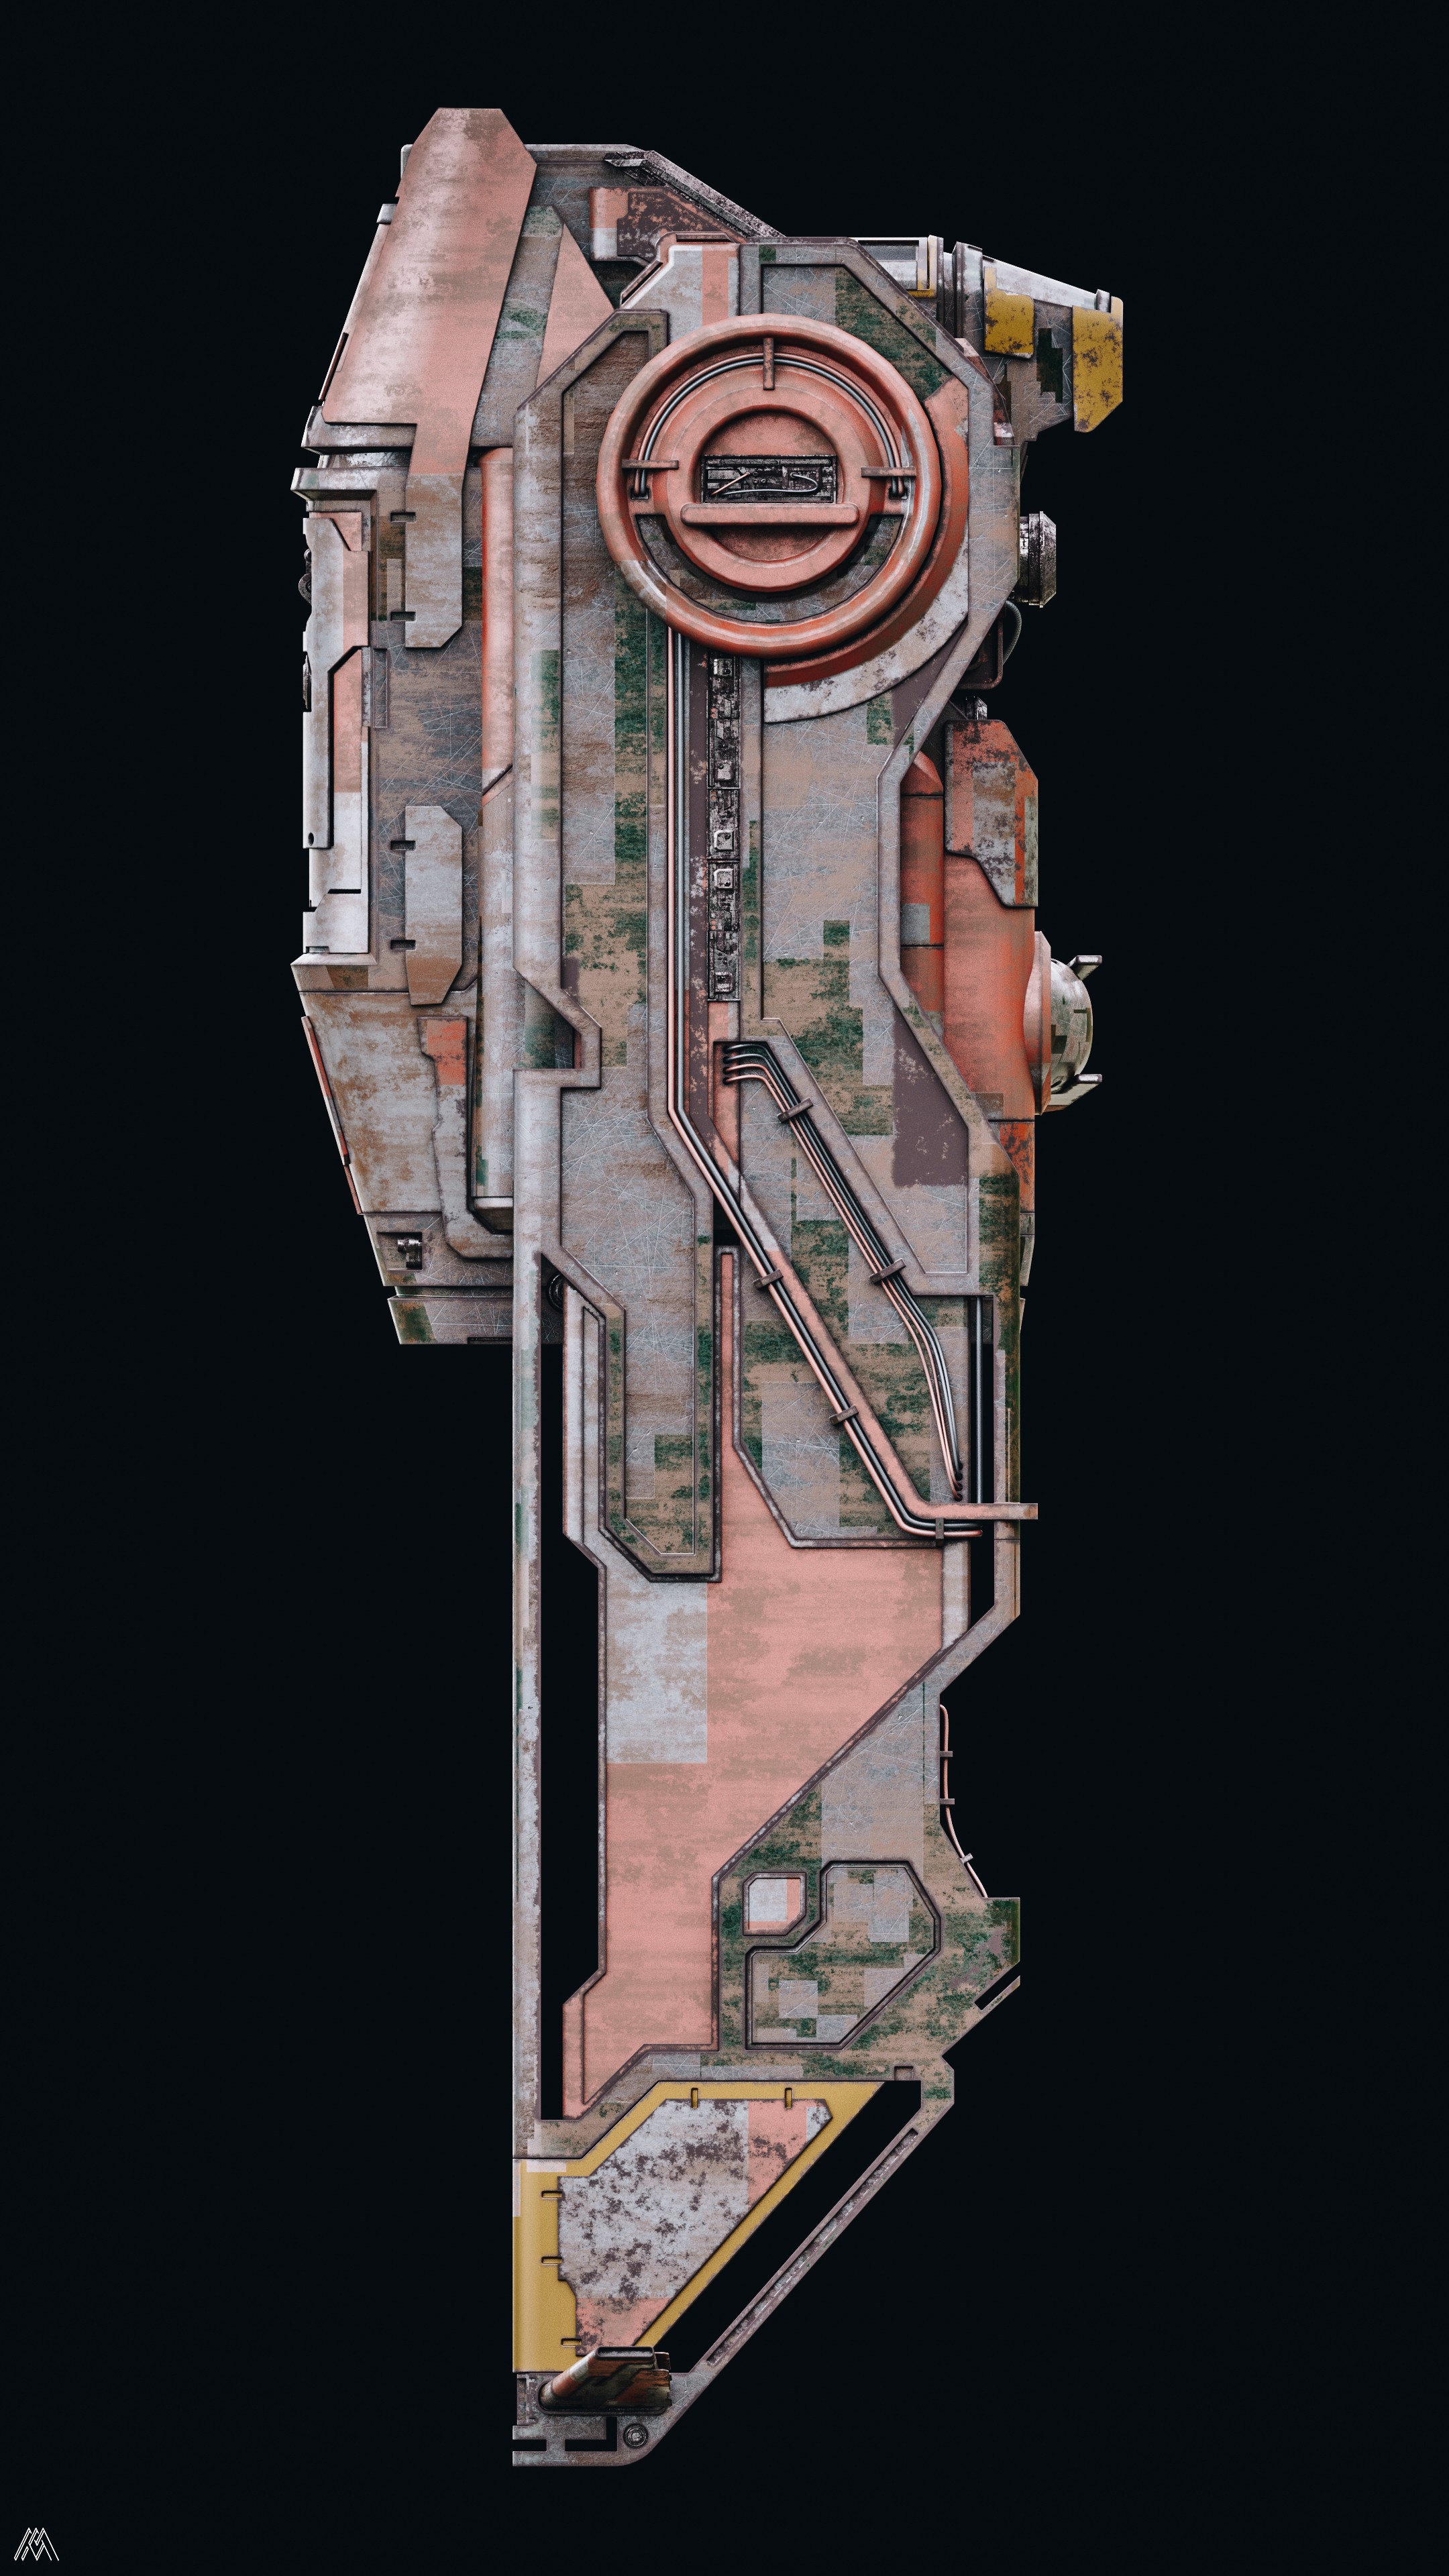 Spaceship 06 - Design Layout 2 par Quentin